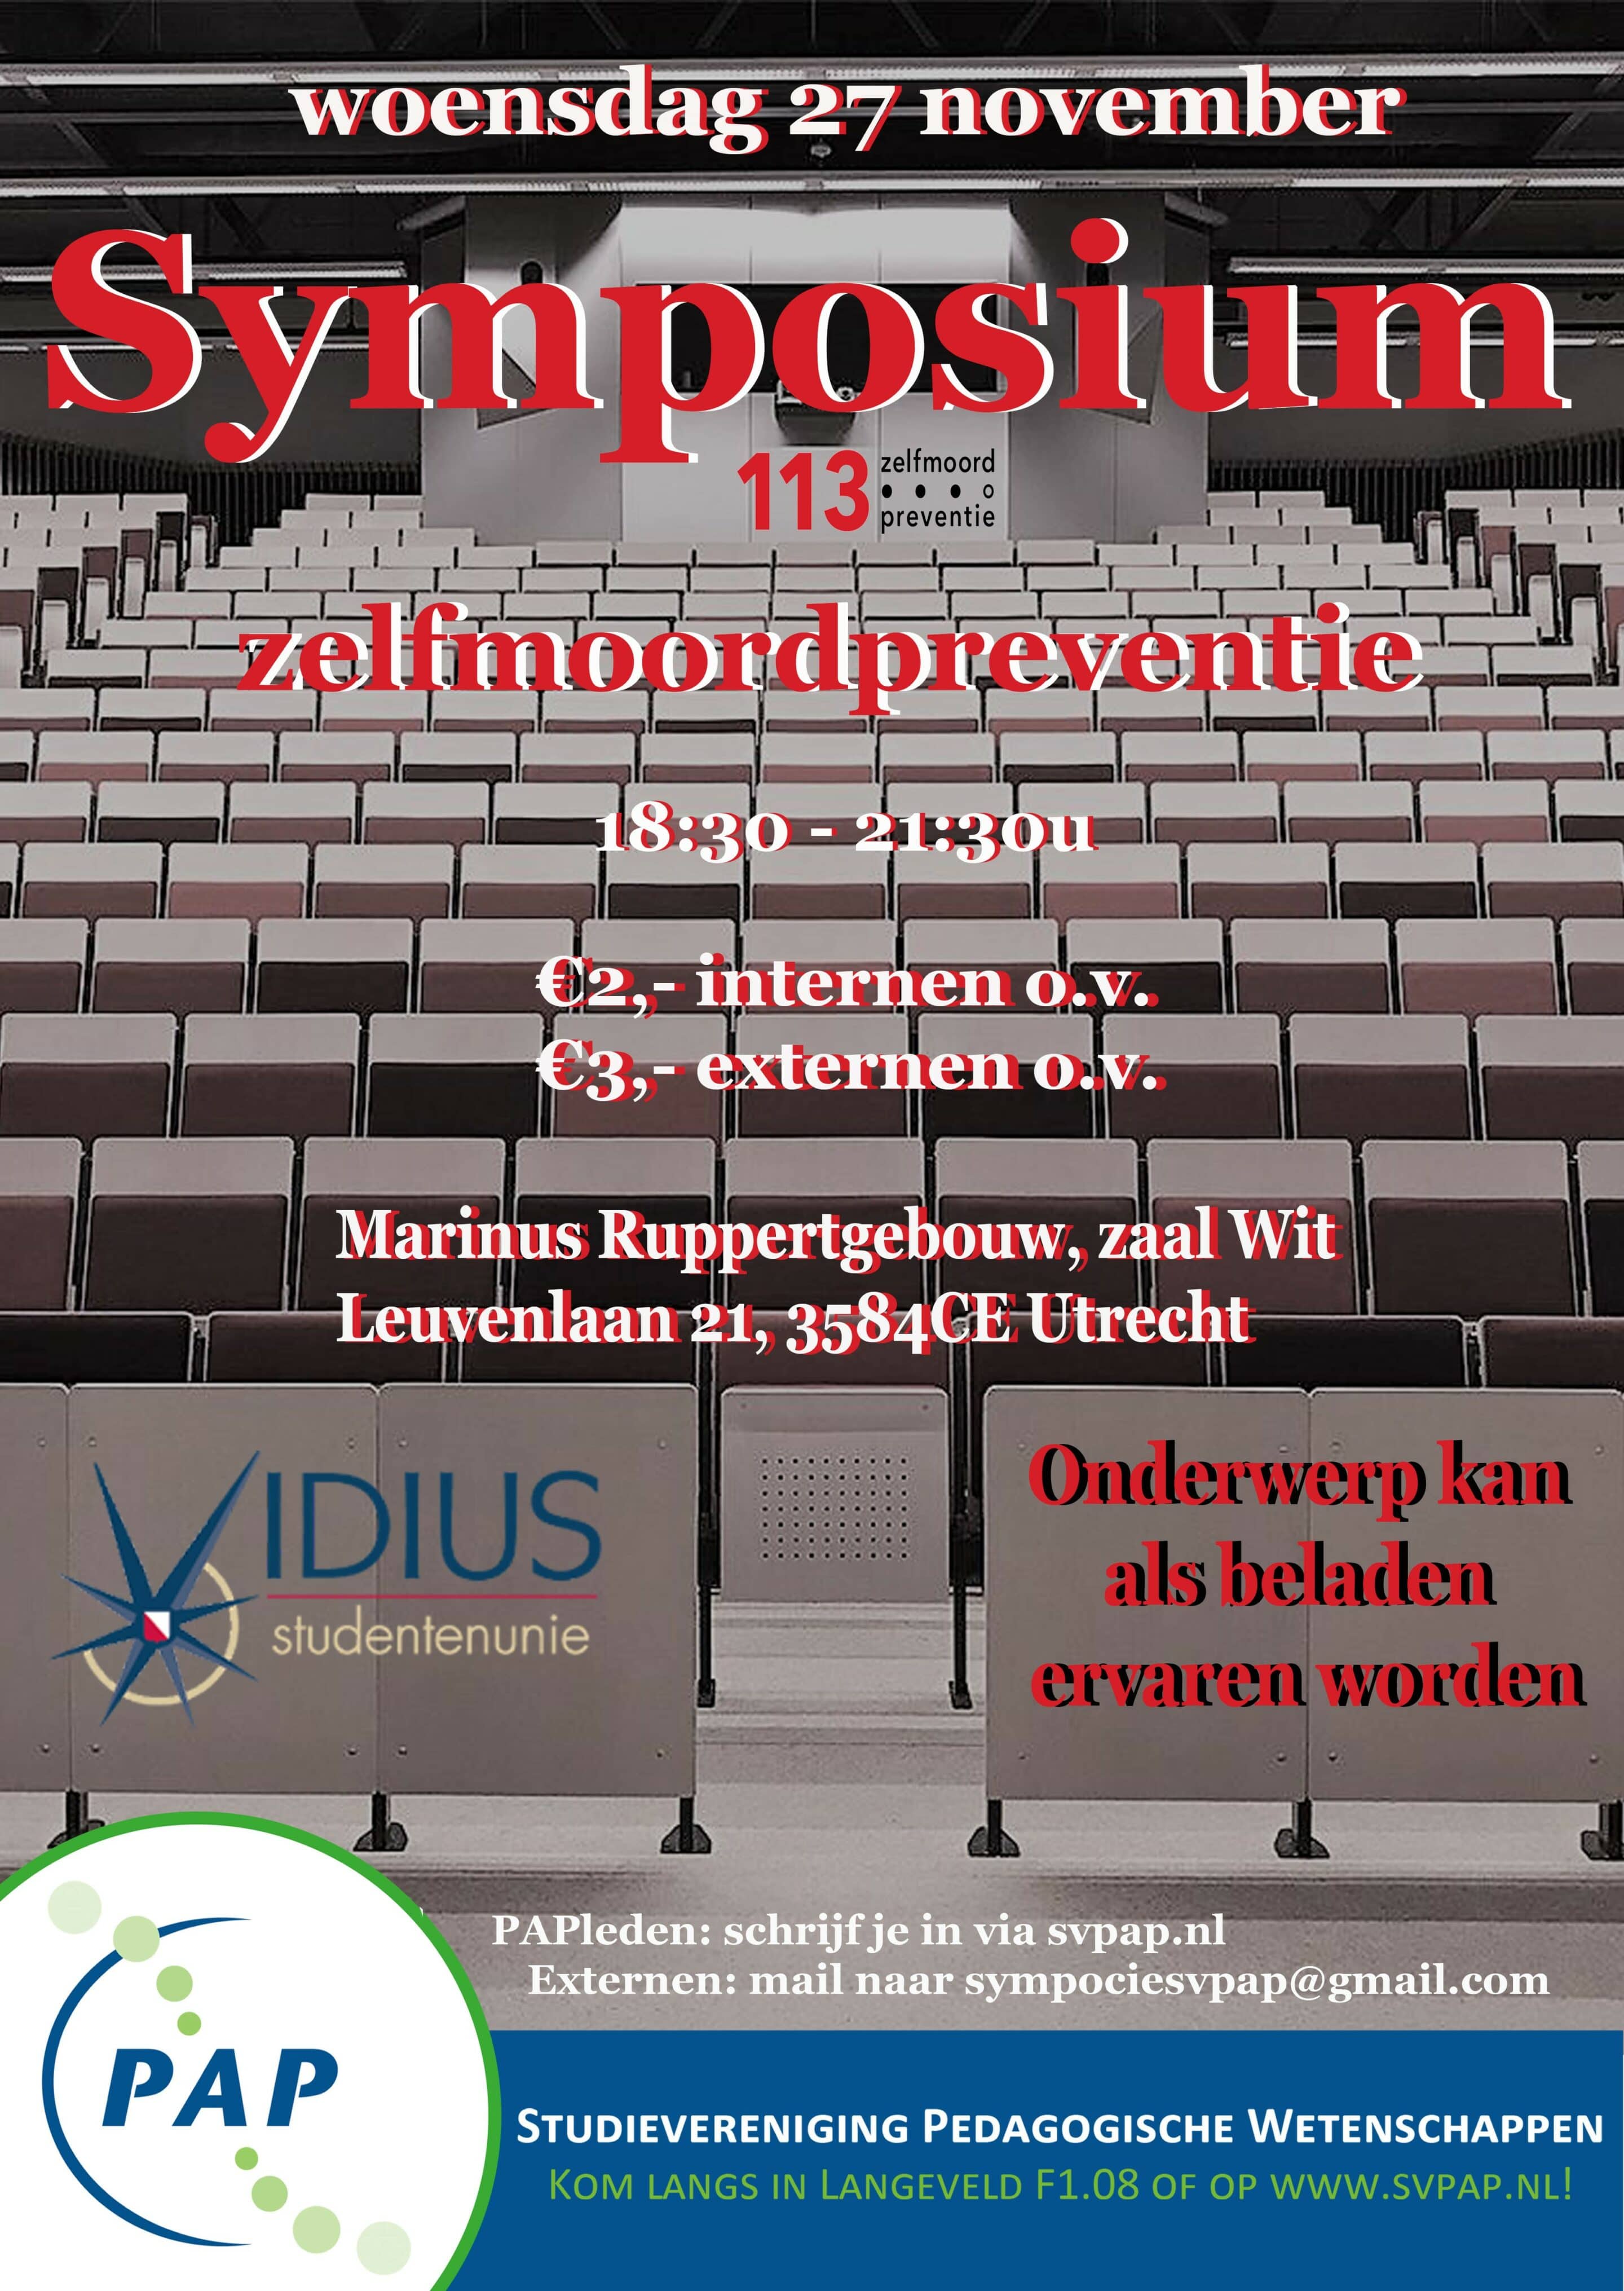 Symposium zelfmoordpreventie